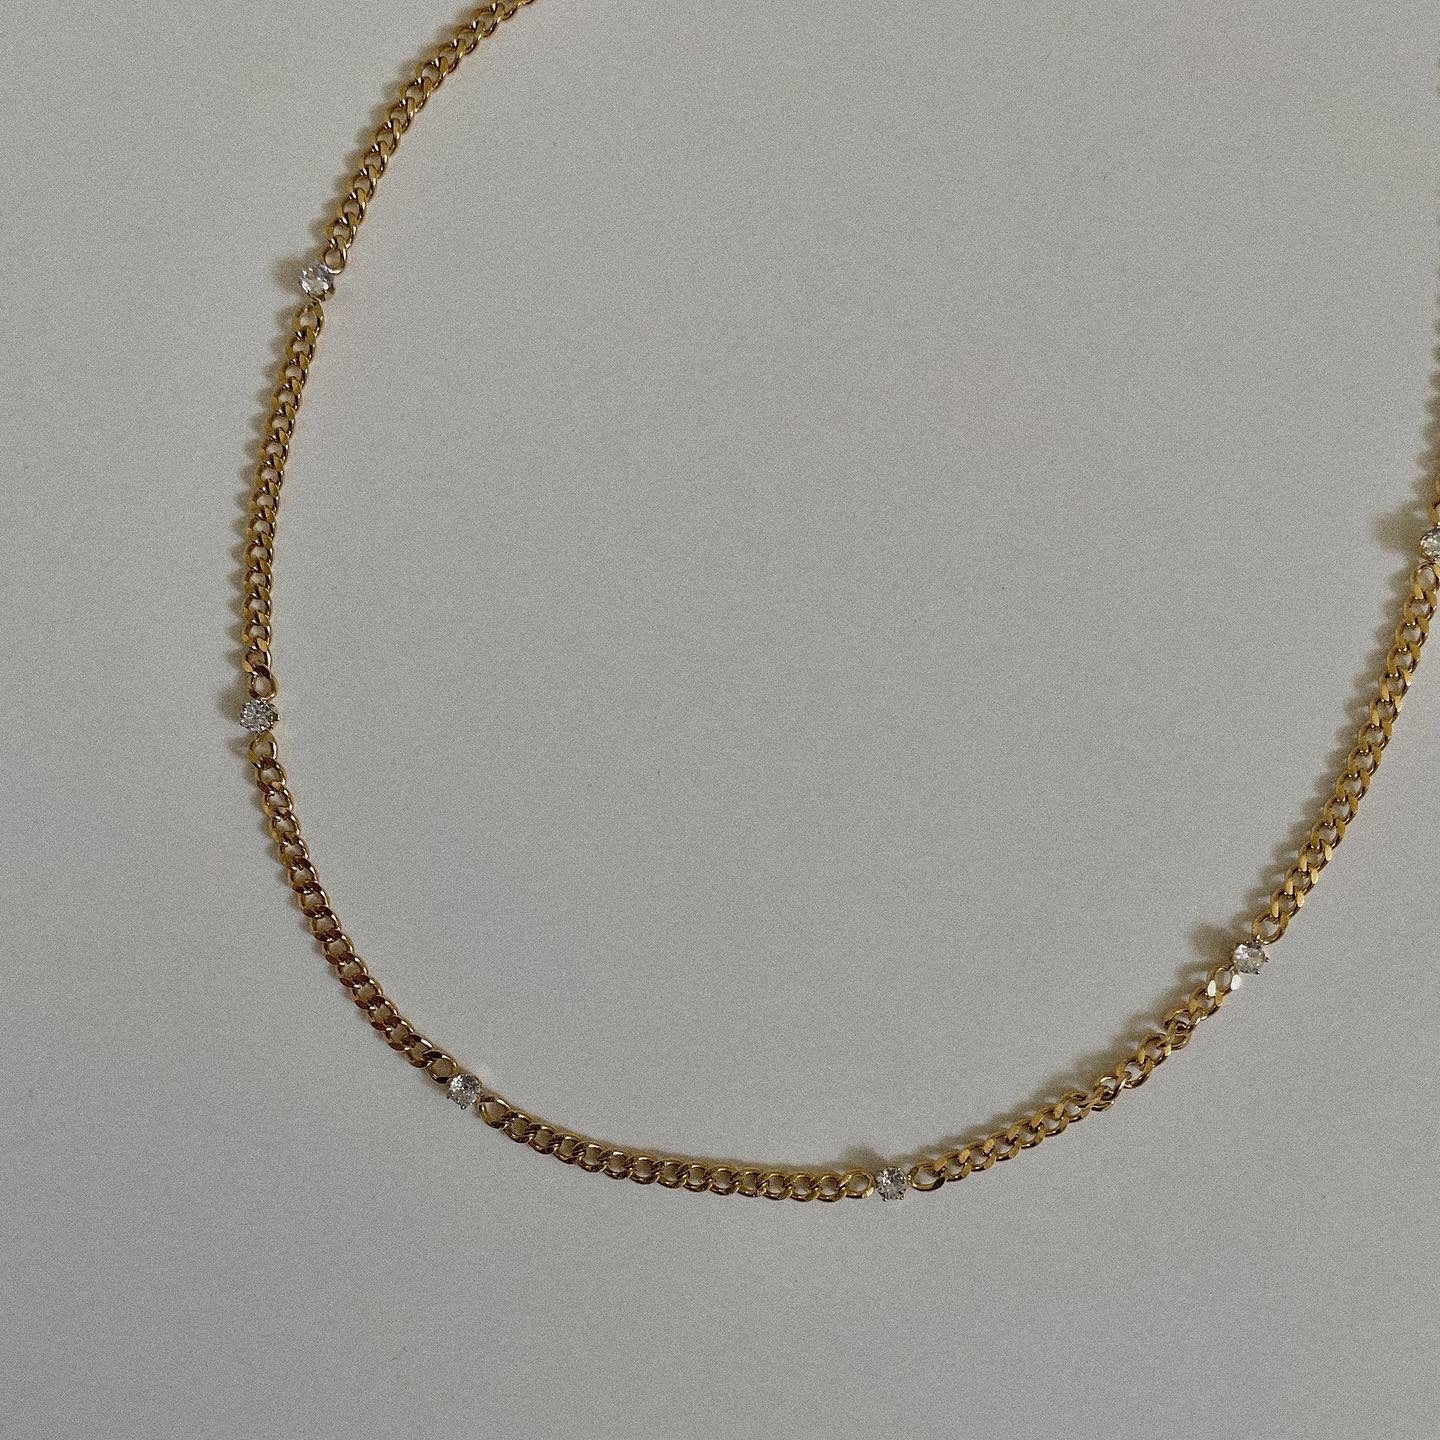 Nayva Stone Necklace - Namaste Jewelry Canada